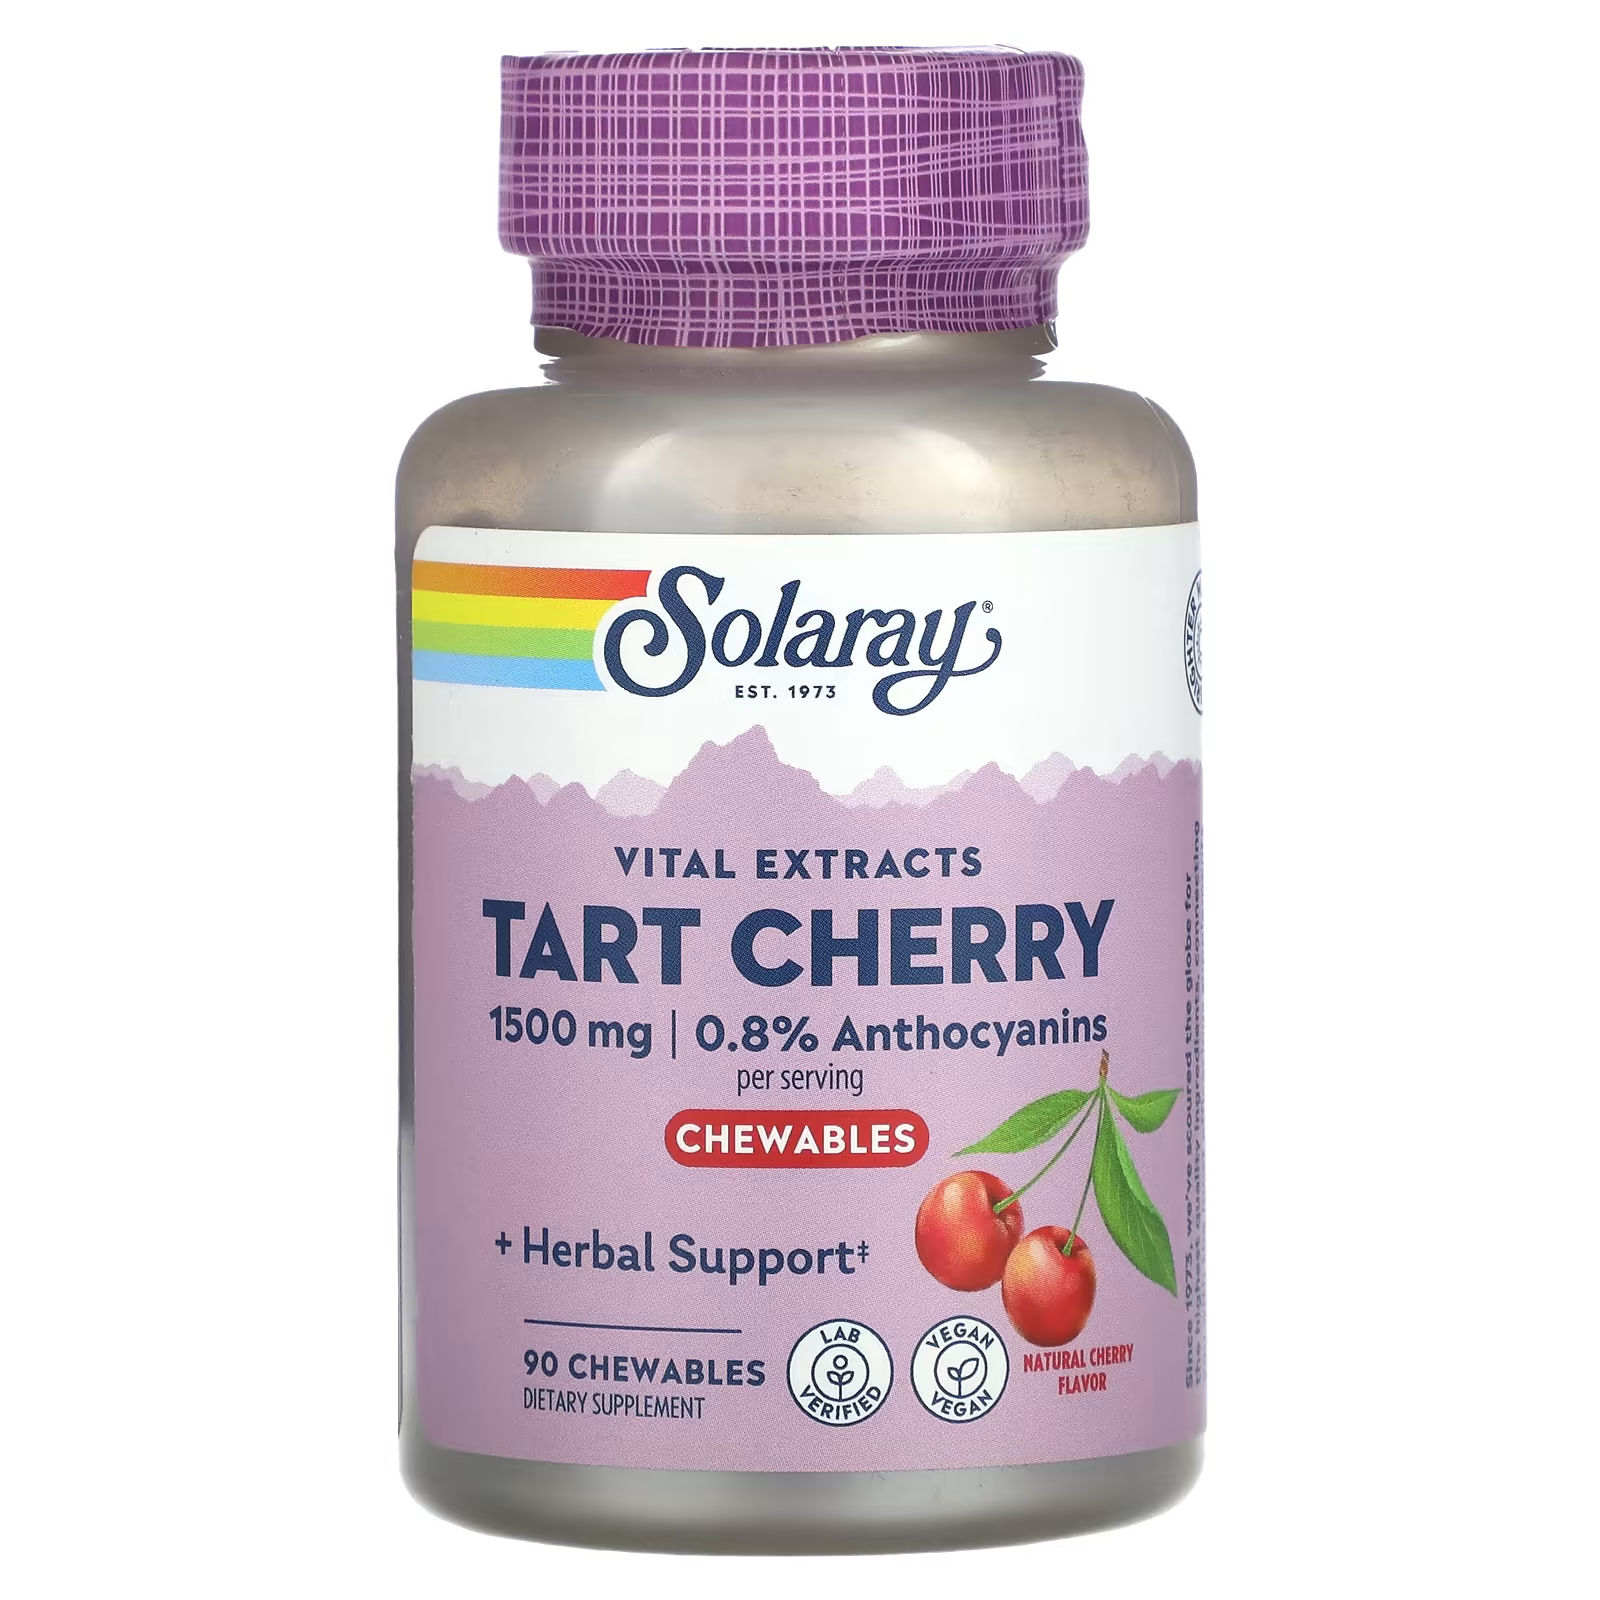 Пищевая добавка Solaray Vital Extracts Tart Cherry, натуральная вишня, 90 жевательных таблеток пищевая добавка solaray vital extracts tart cherry натуральная вишня 90 жевательных таблеток